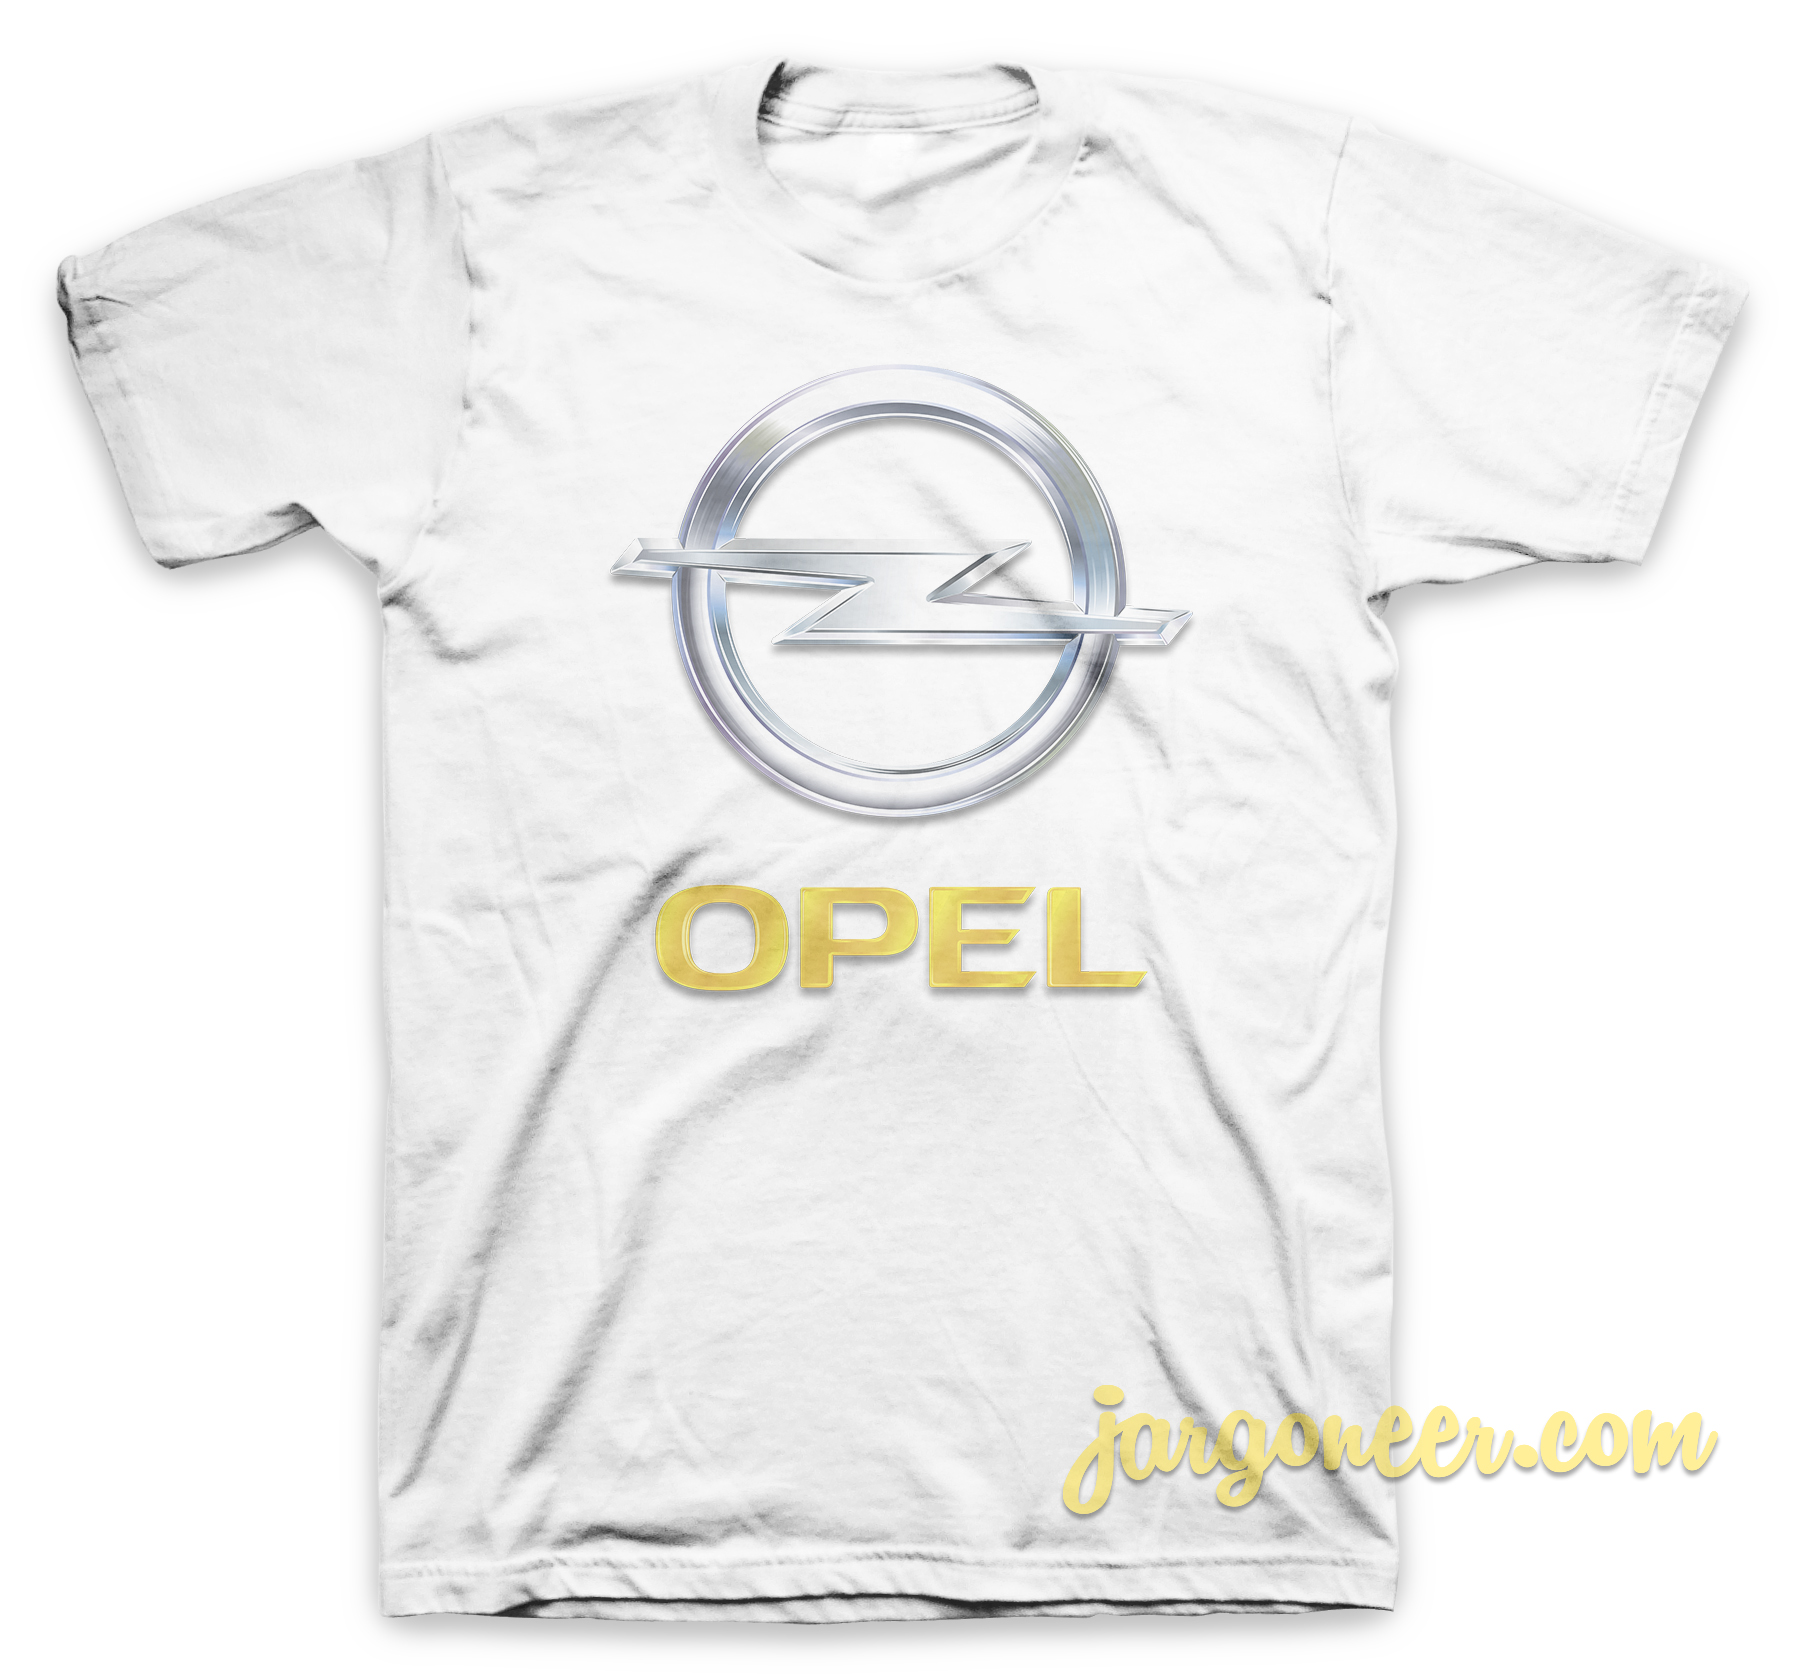 Opel Logo White T Shirt - Shop Unique Graphic Cool Shirt Designs